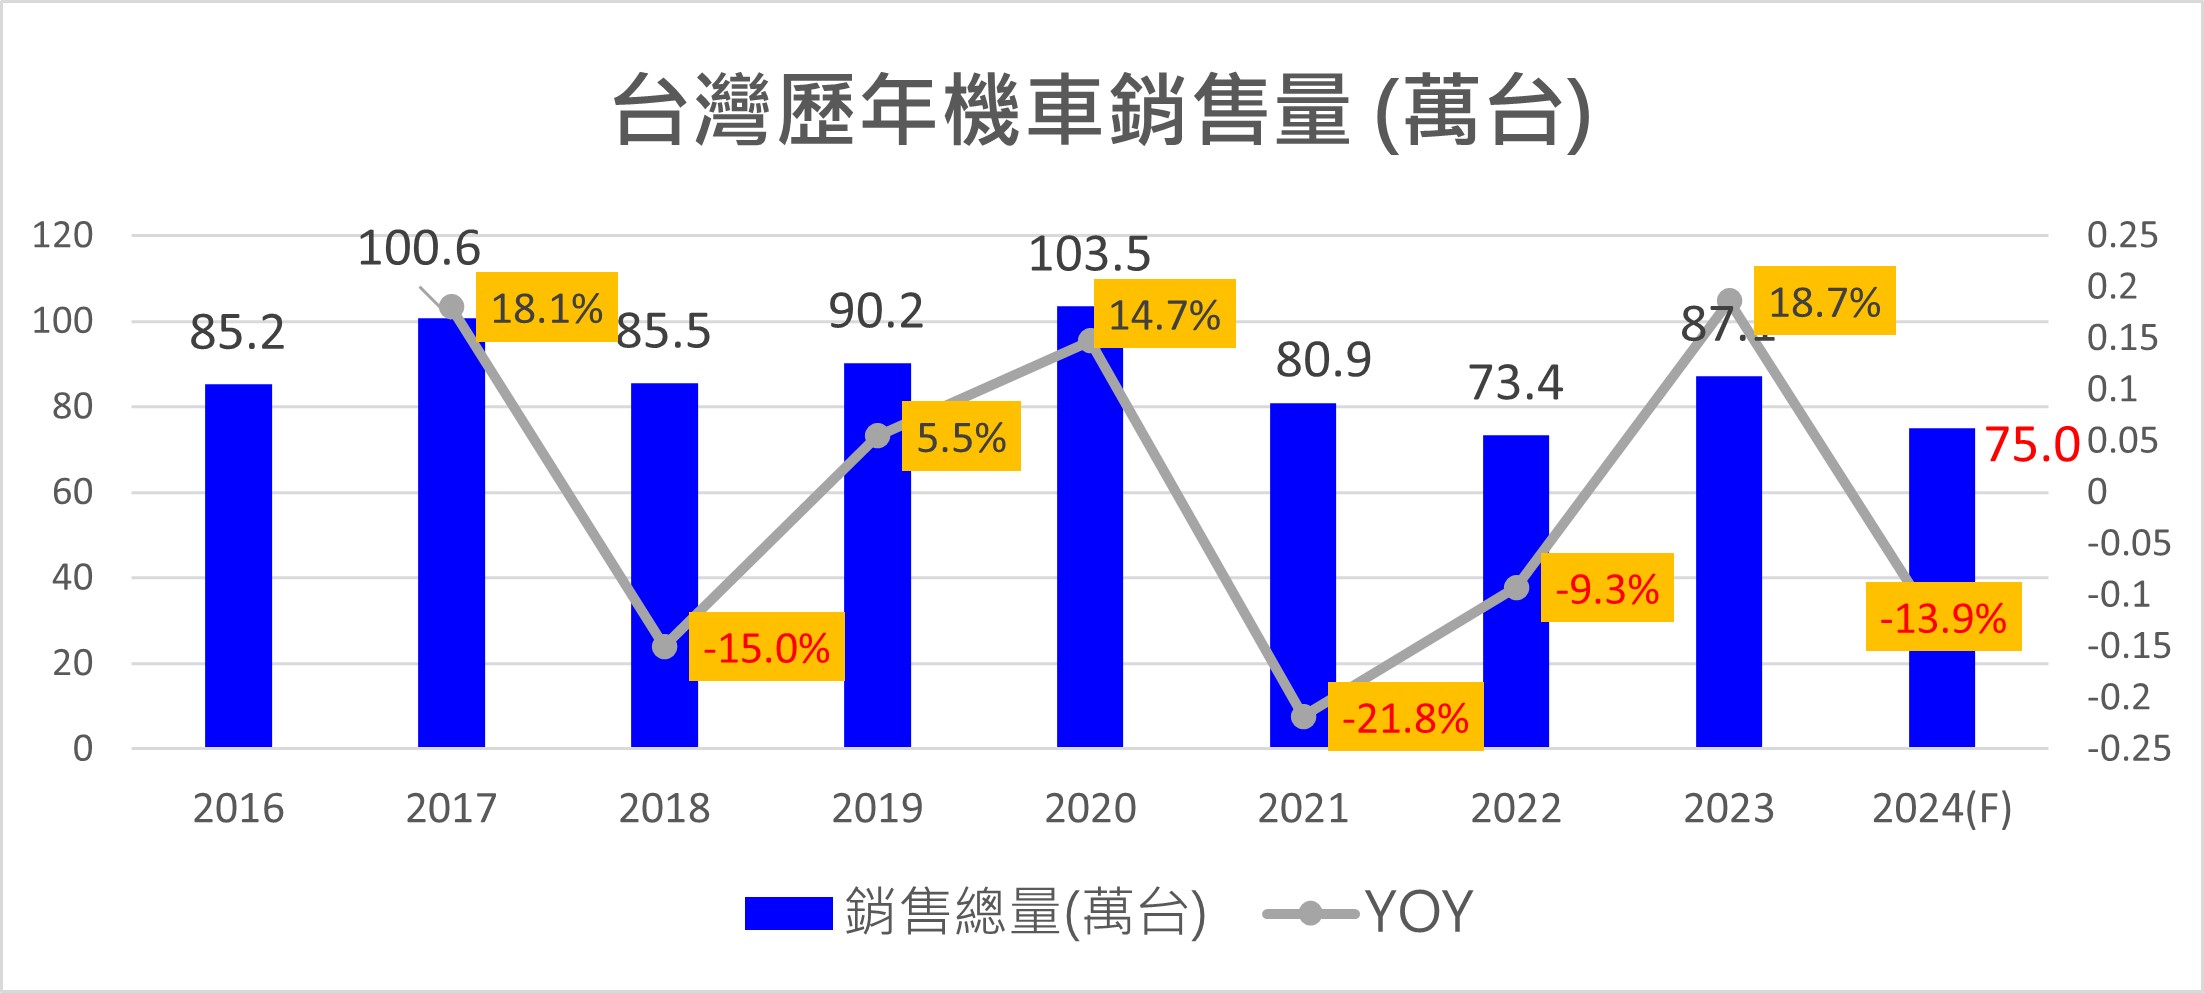 2023年台灣熱銷機車排行榜 - 電腦王阿達